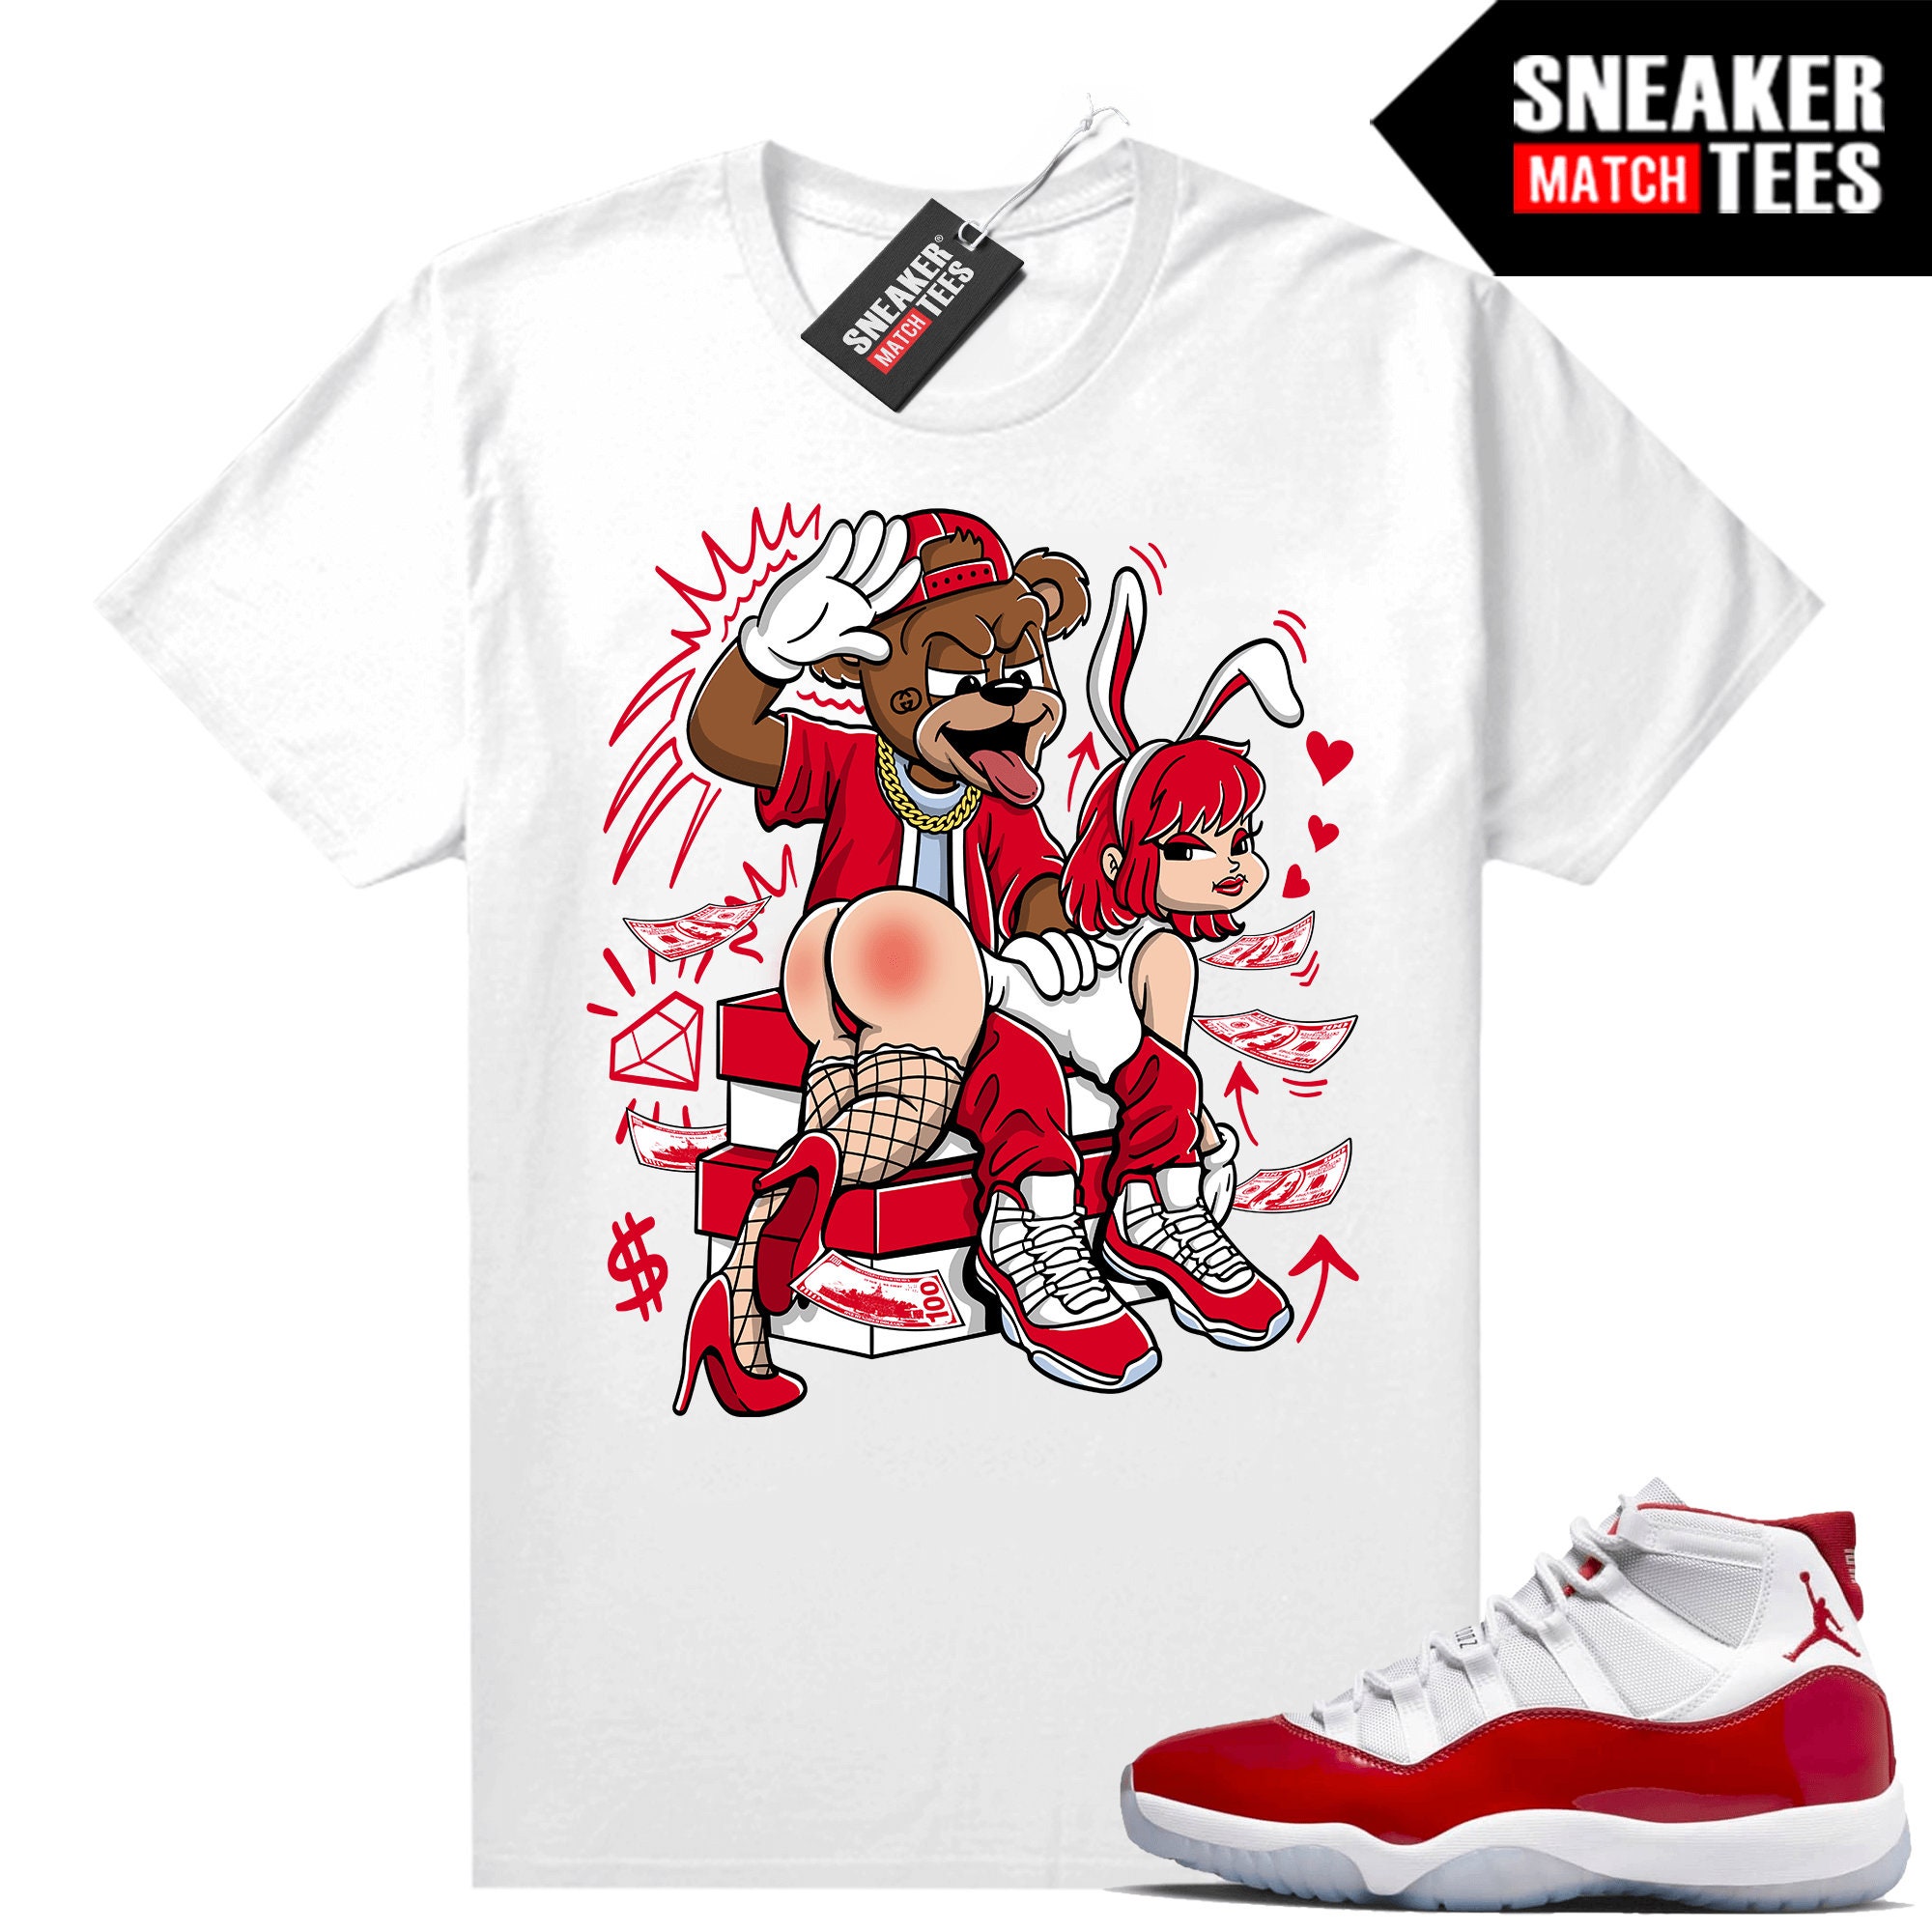 Jordan 6 UNC Sneaker Tees Outfits | Sneaker Threads Bear Shirt